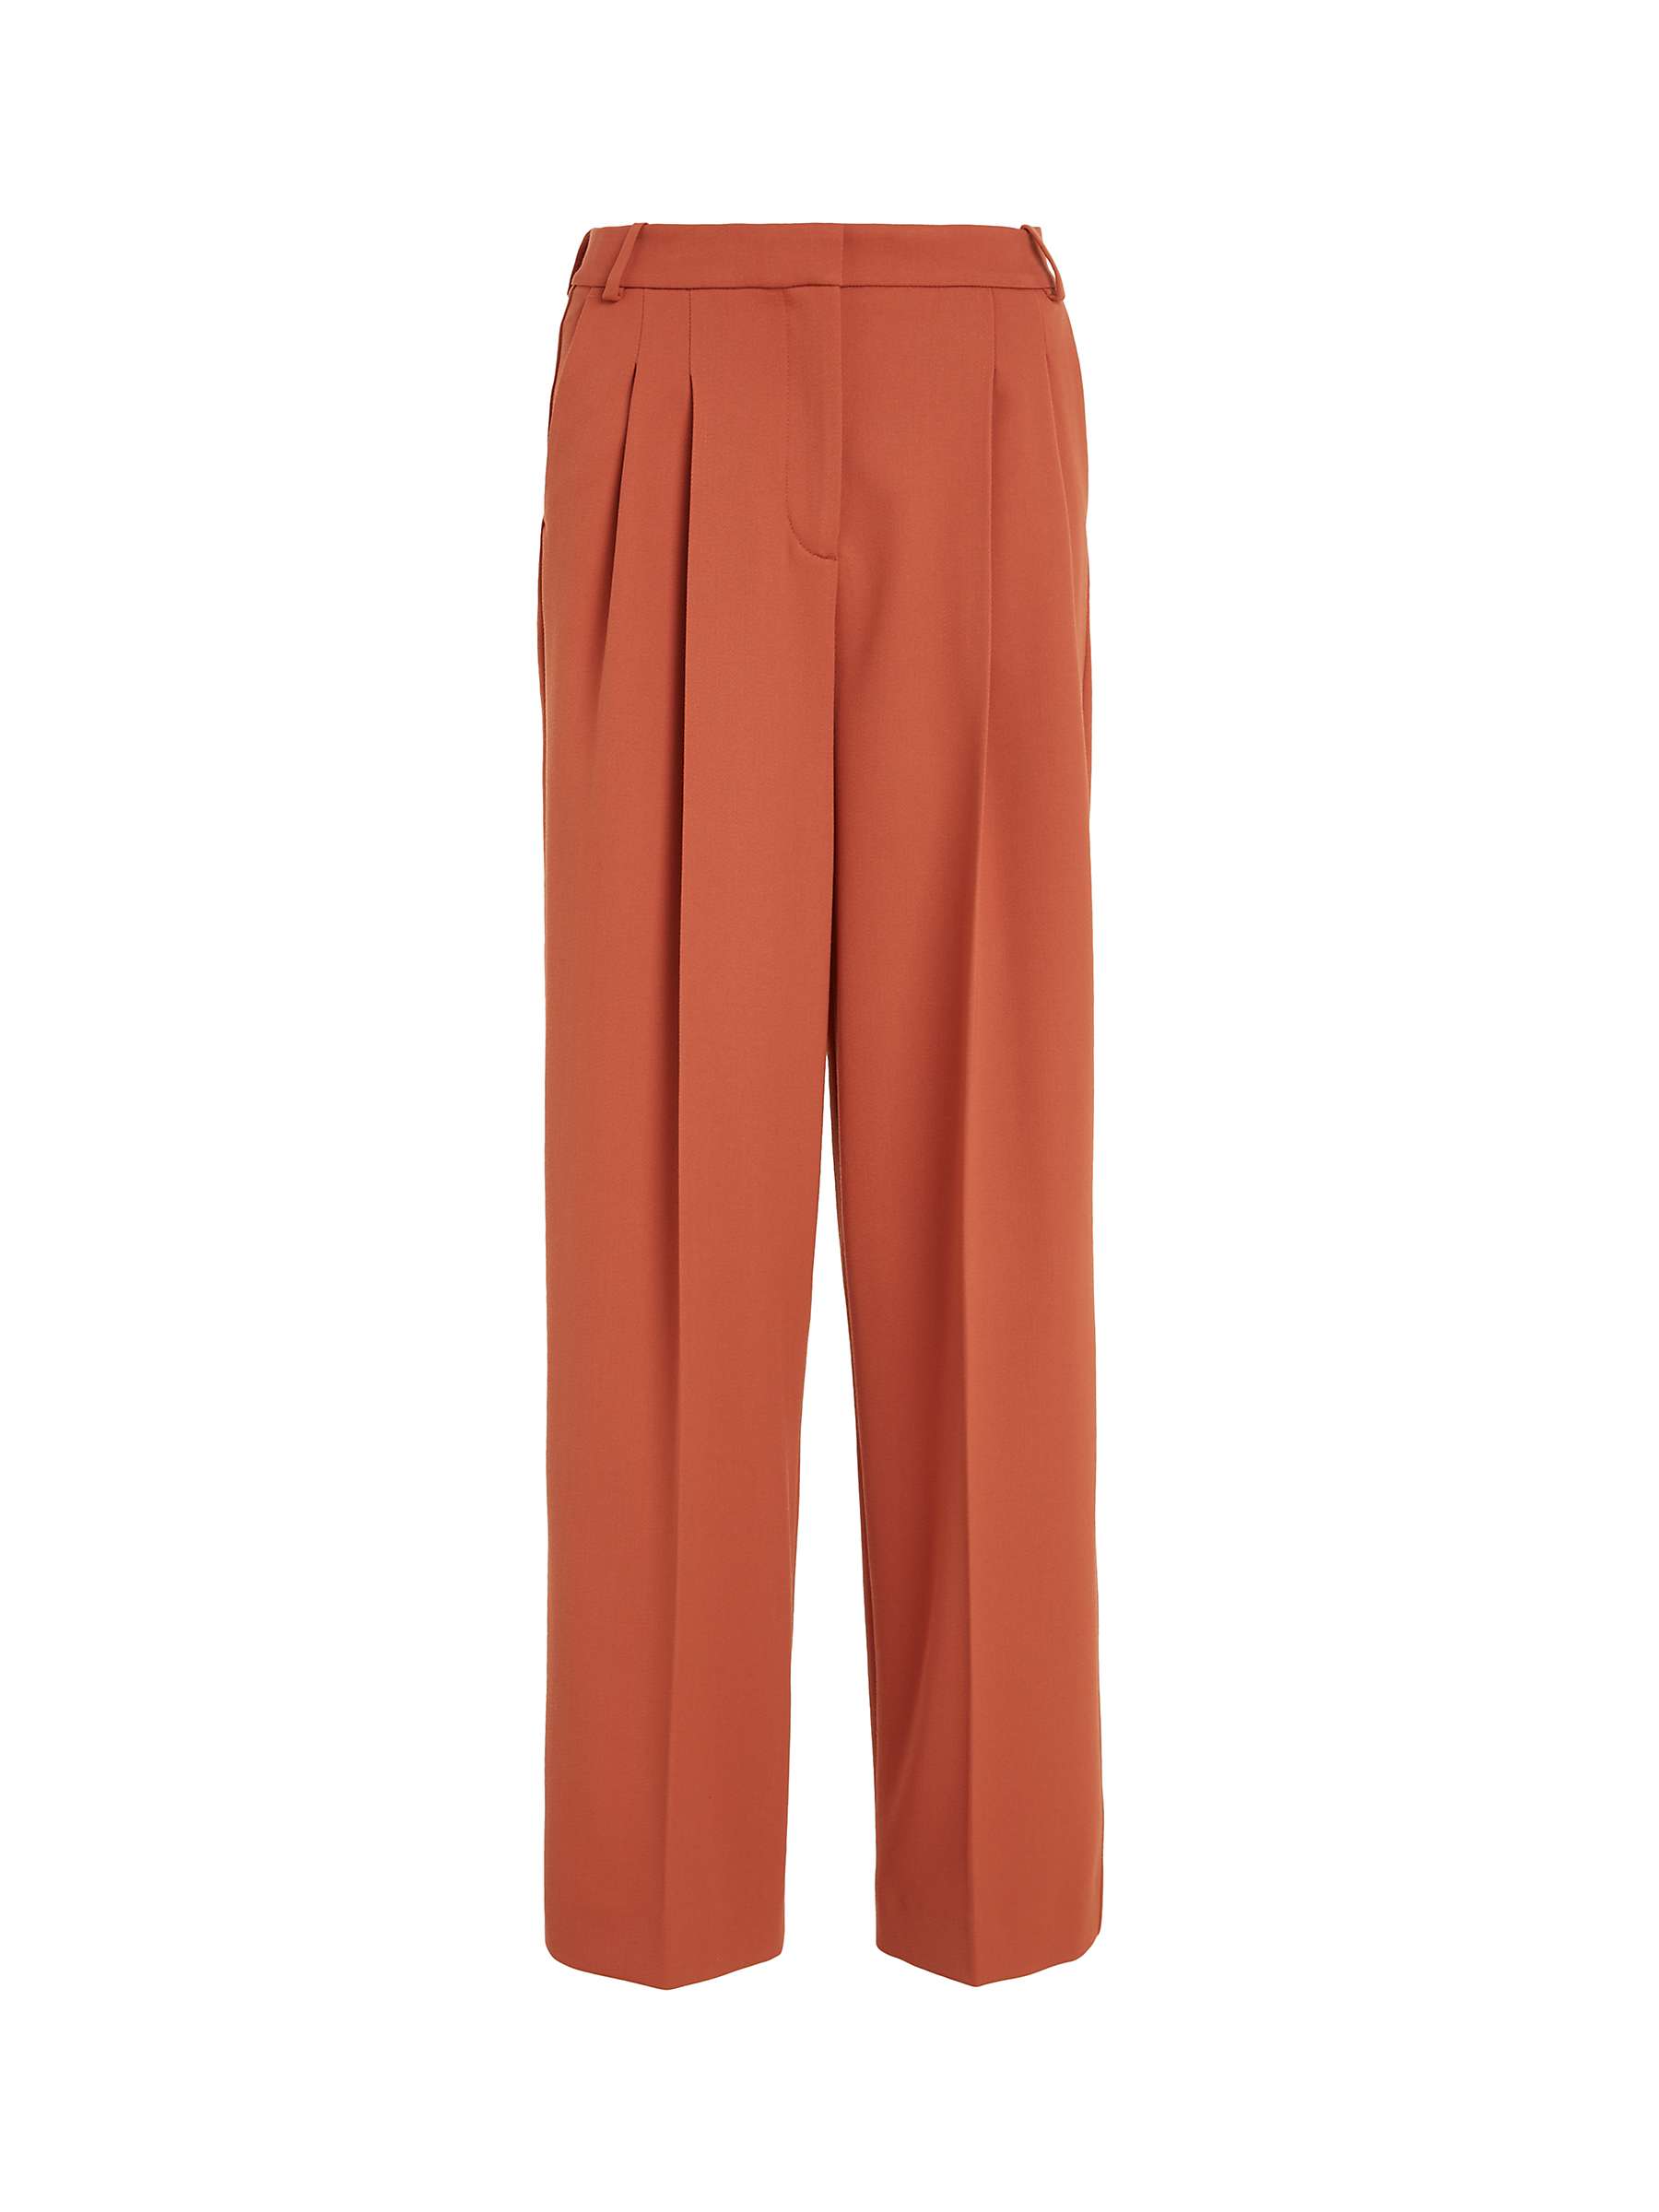 Buy Calvin Klein Wool Blend Trousers, Brown Online at johnlewis.com